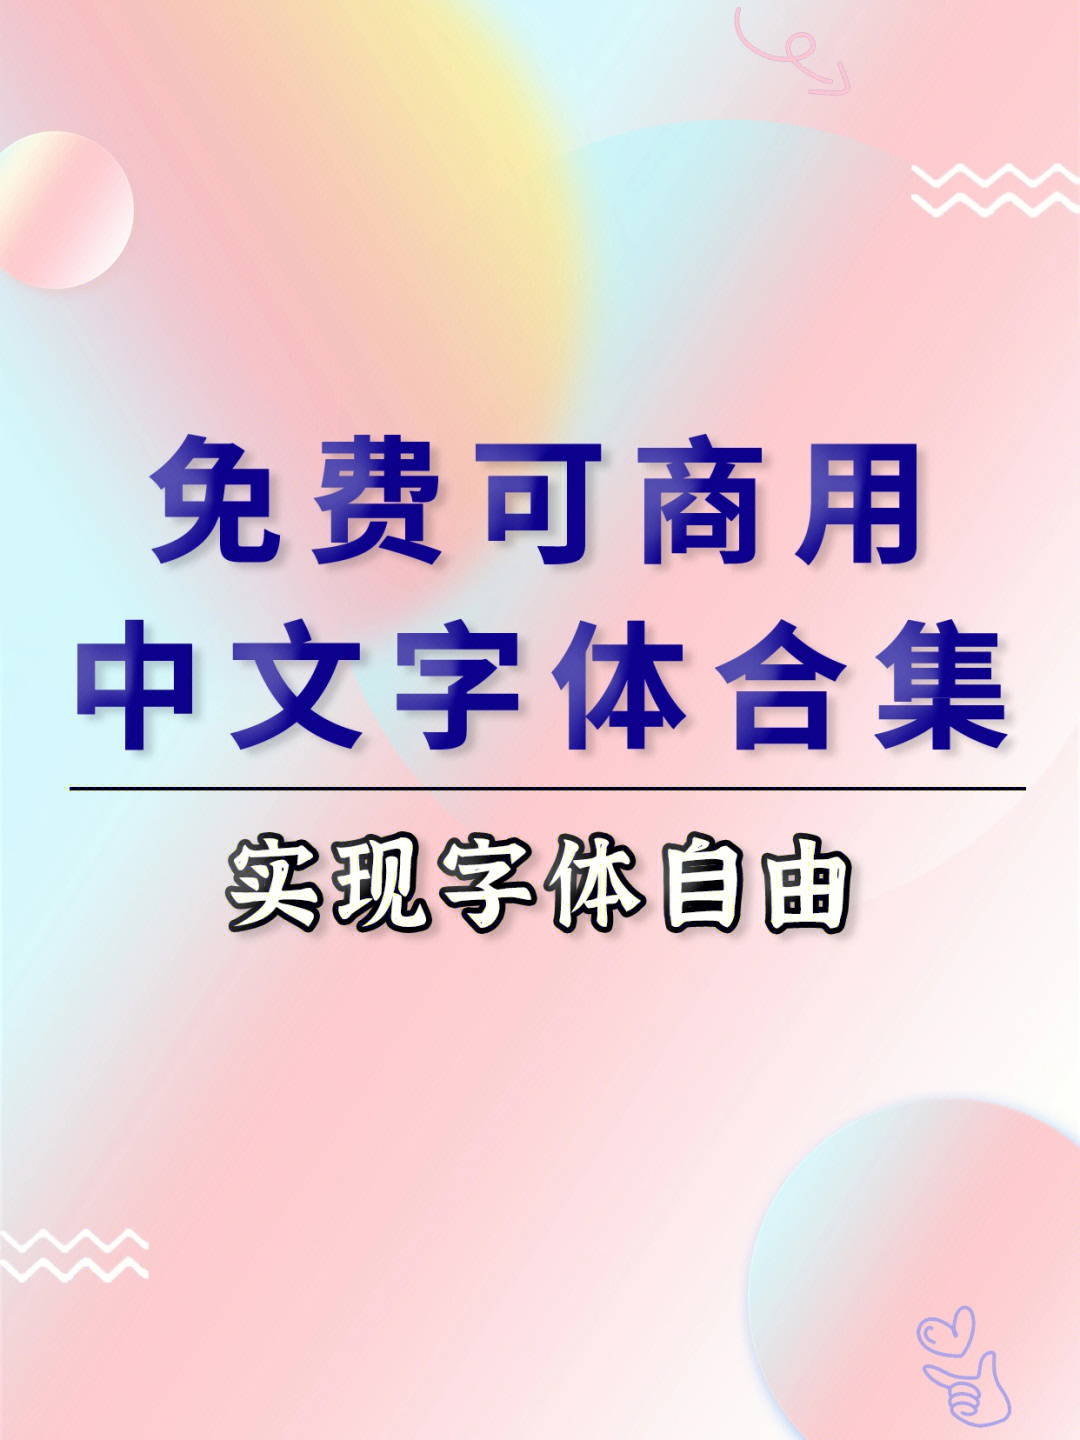 素材分享500款免费可商用的中文字体